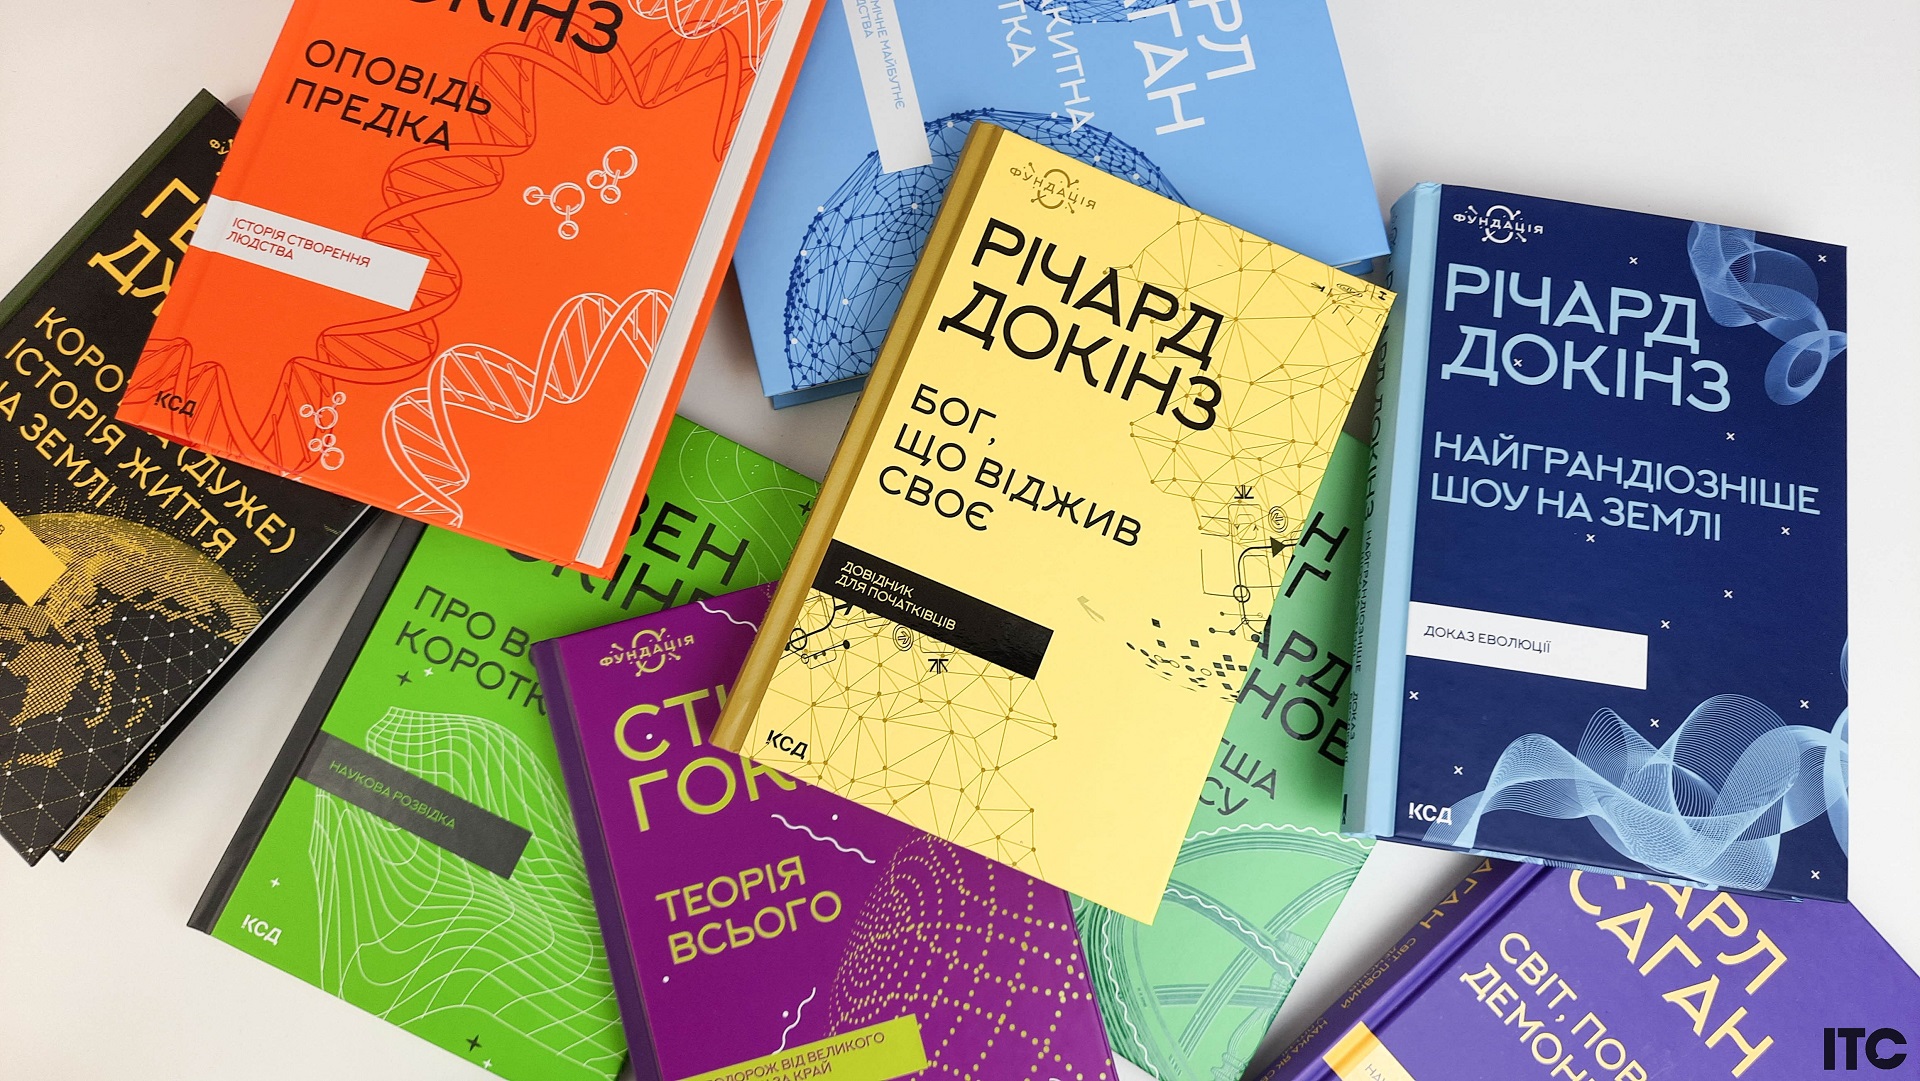 Научно-популярная серия книг «Фундация» от КСД: Саган, Хокинг, Докинз и другие о космосе, физике, истории, биологии